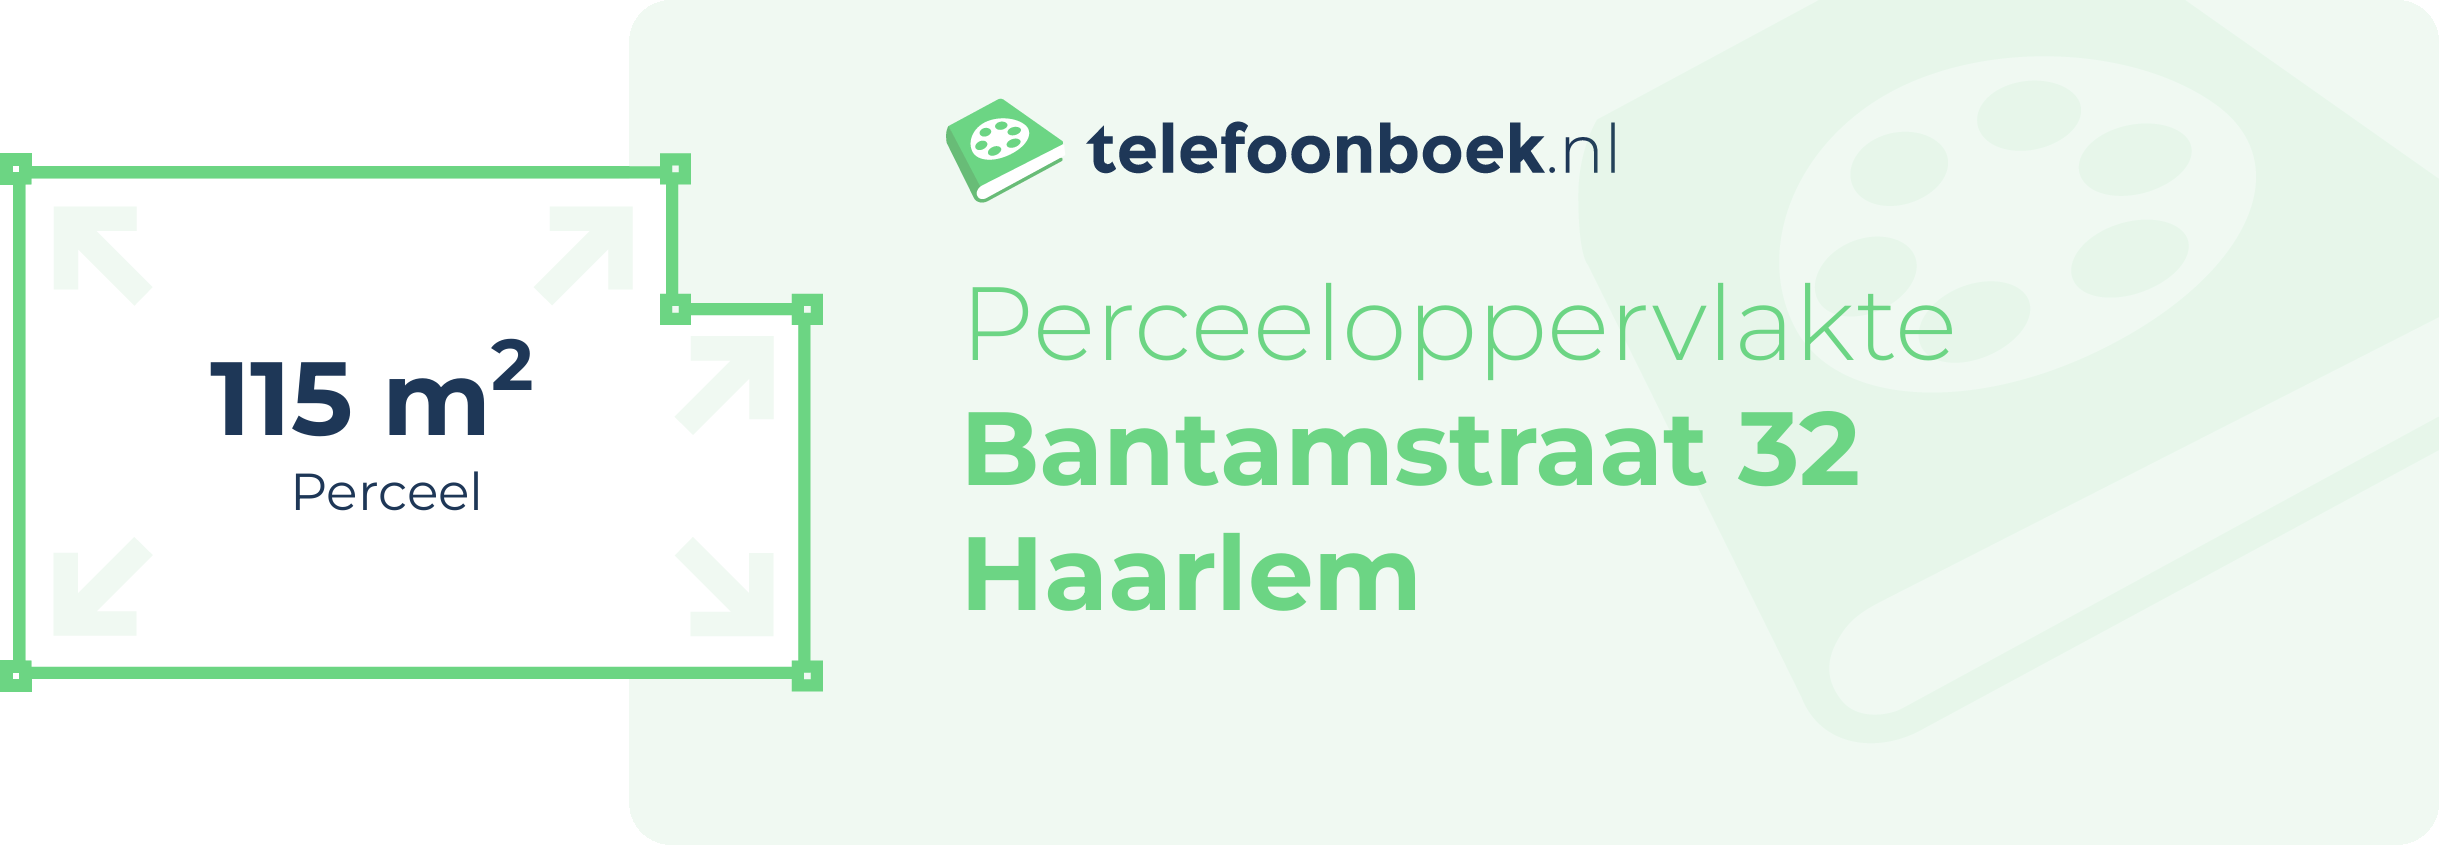 Perceeloppervlakte Bantamstraat 32 Haarlem